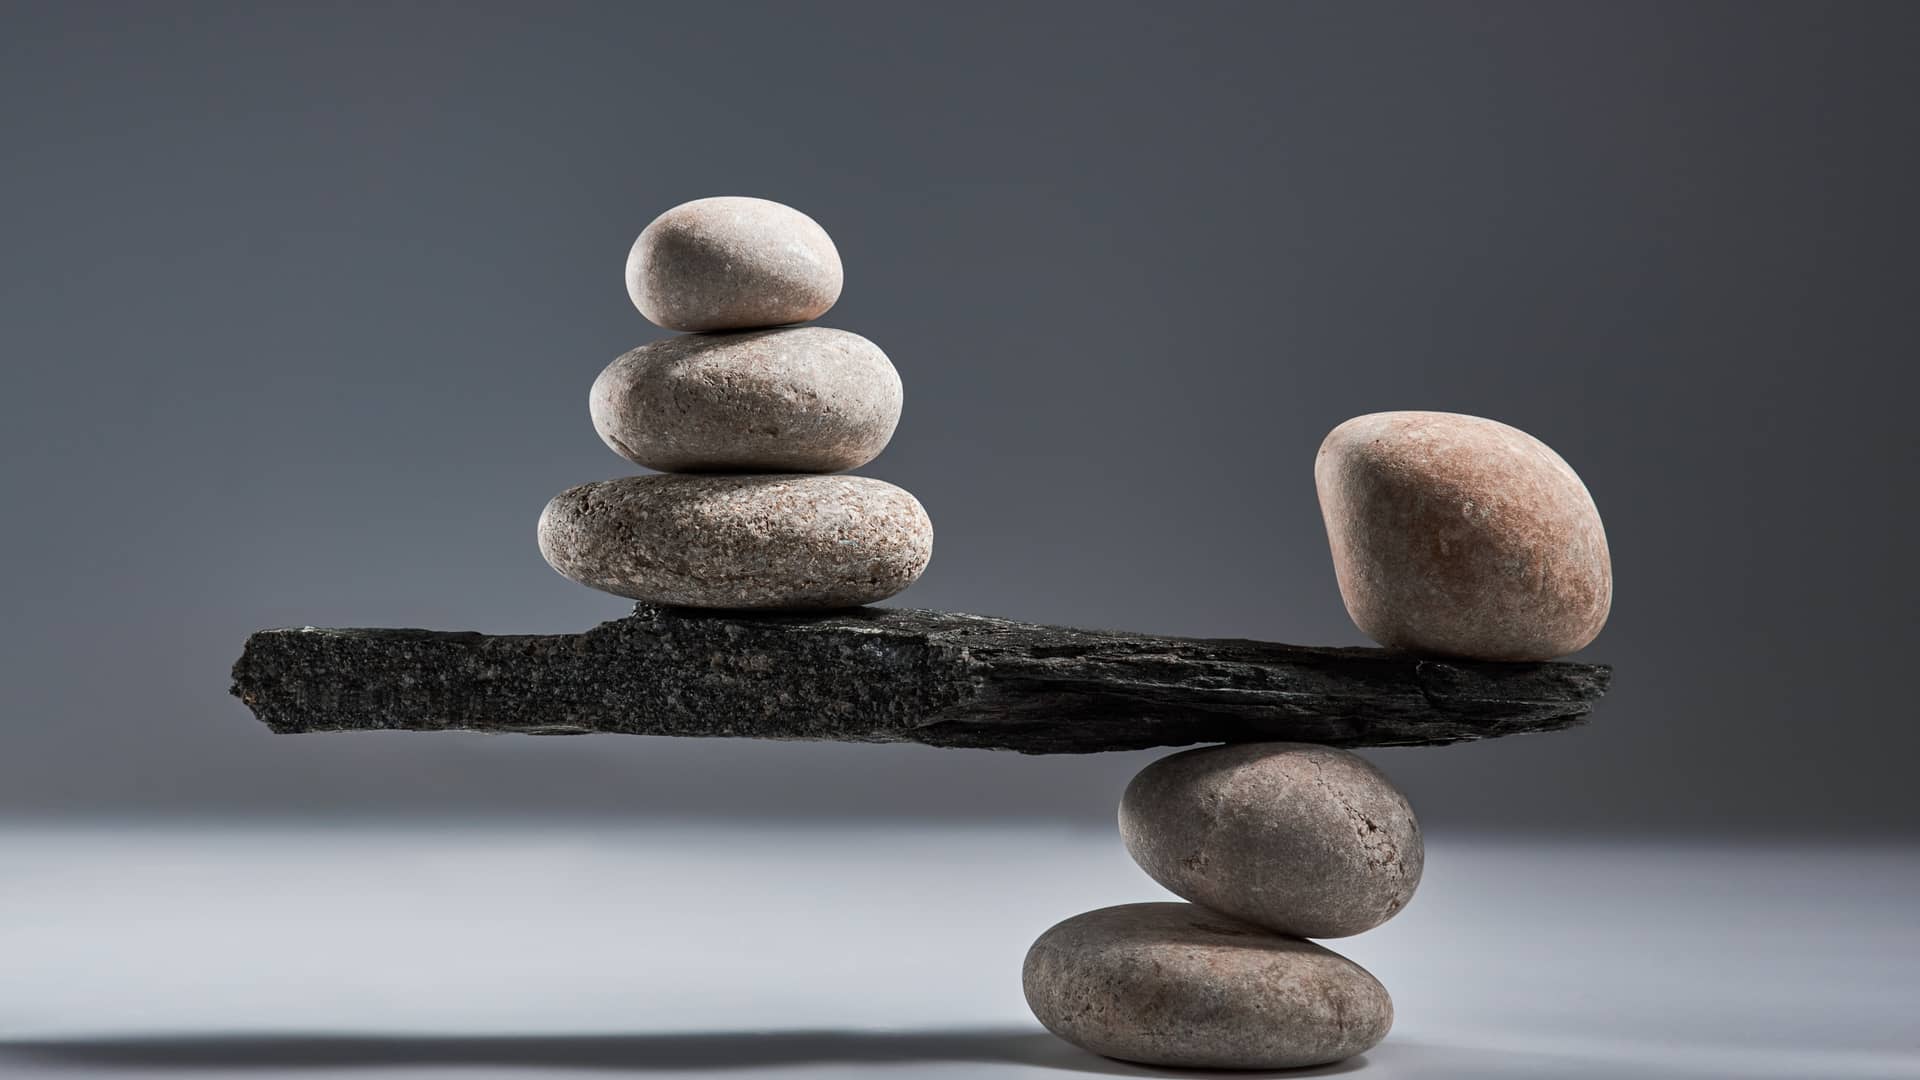 balanza hecha de piedras y madera que representa las criptomonedas balancer